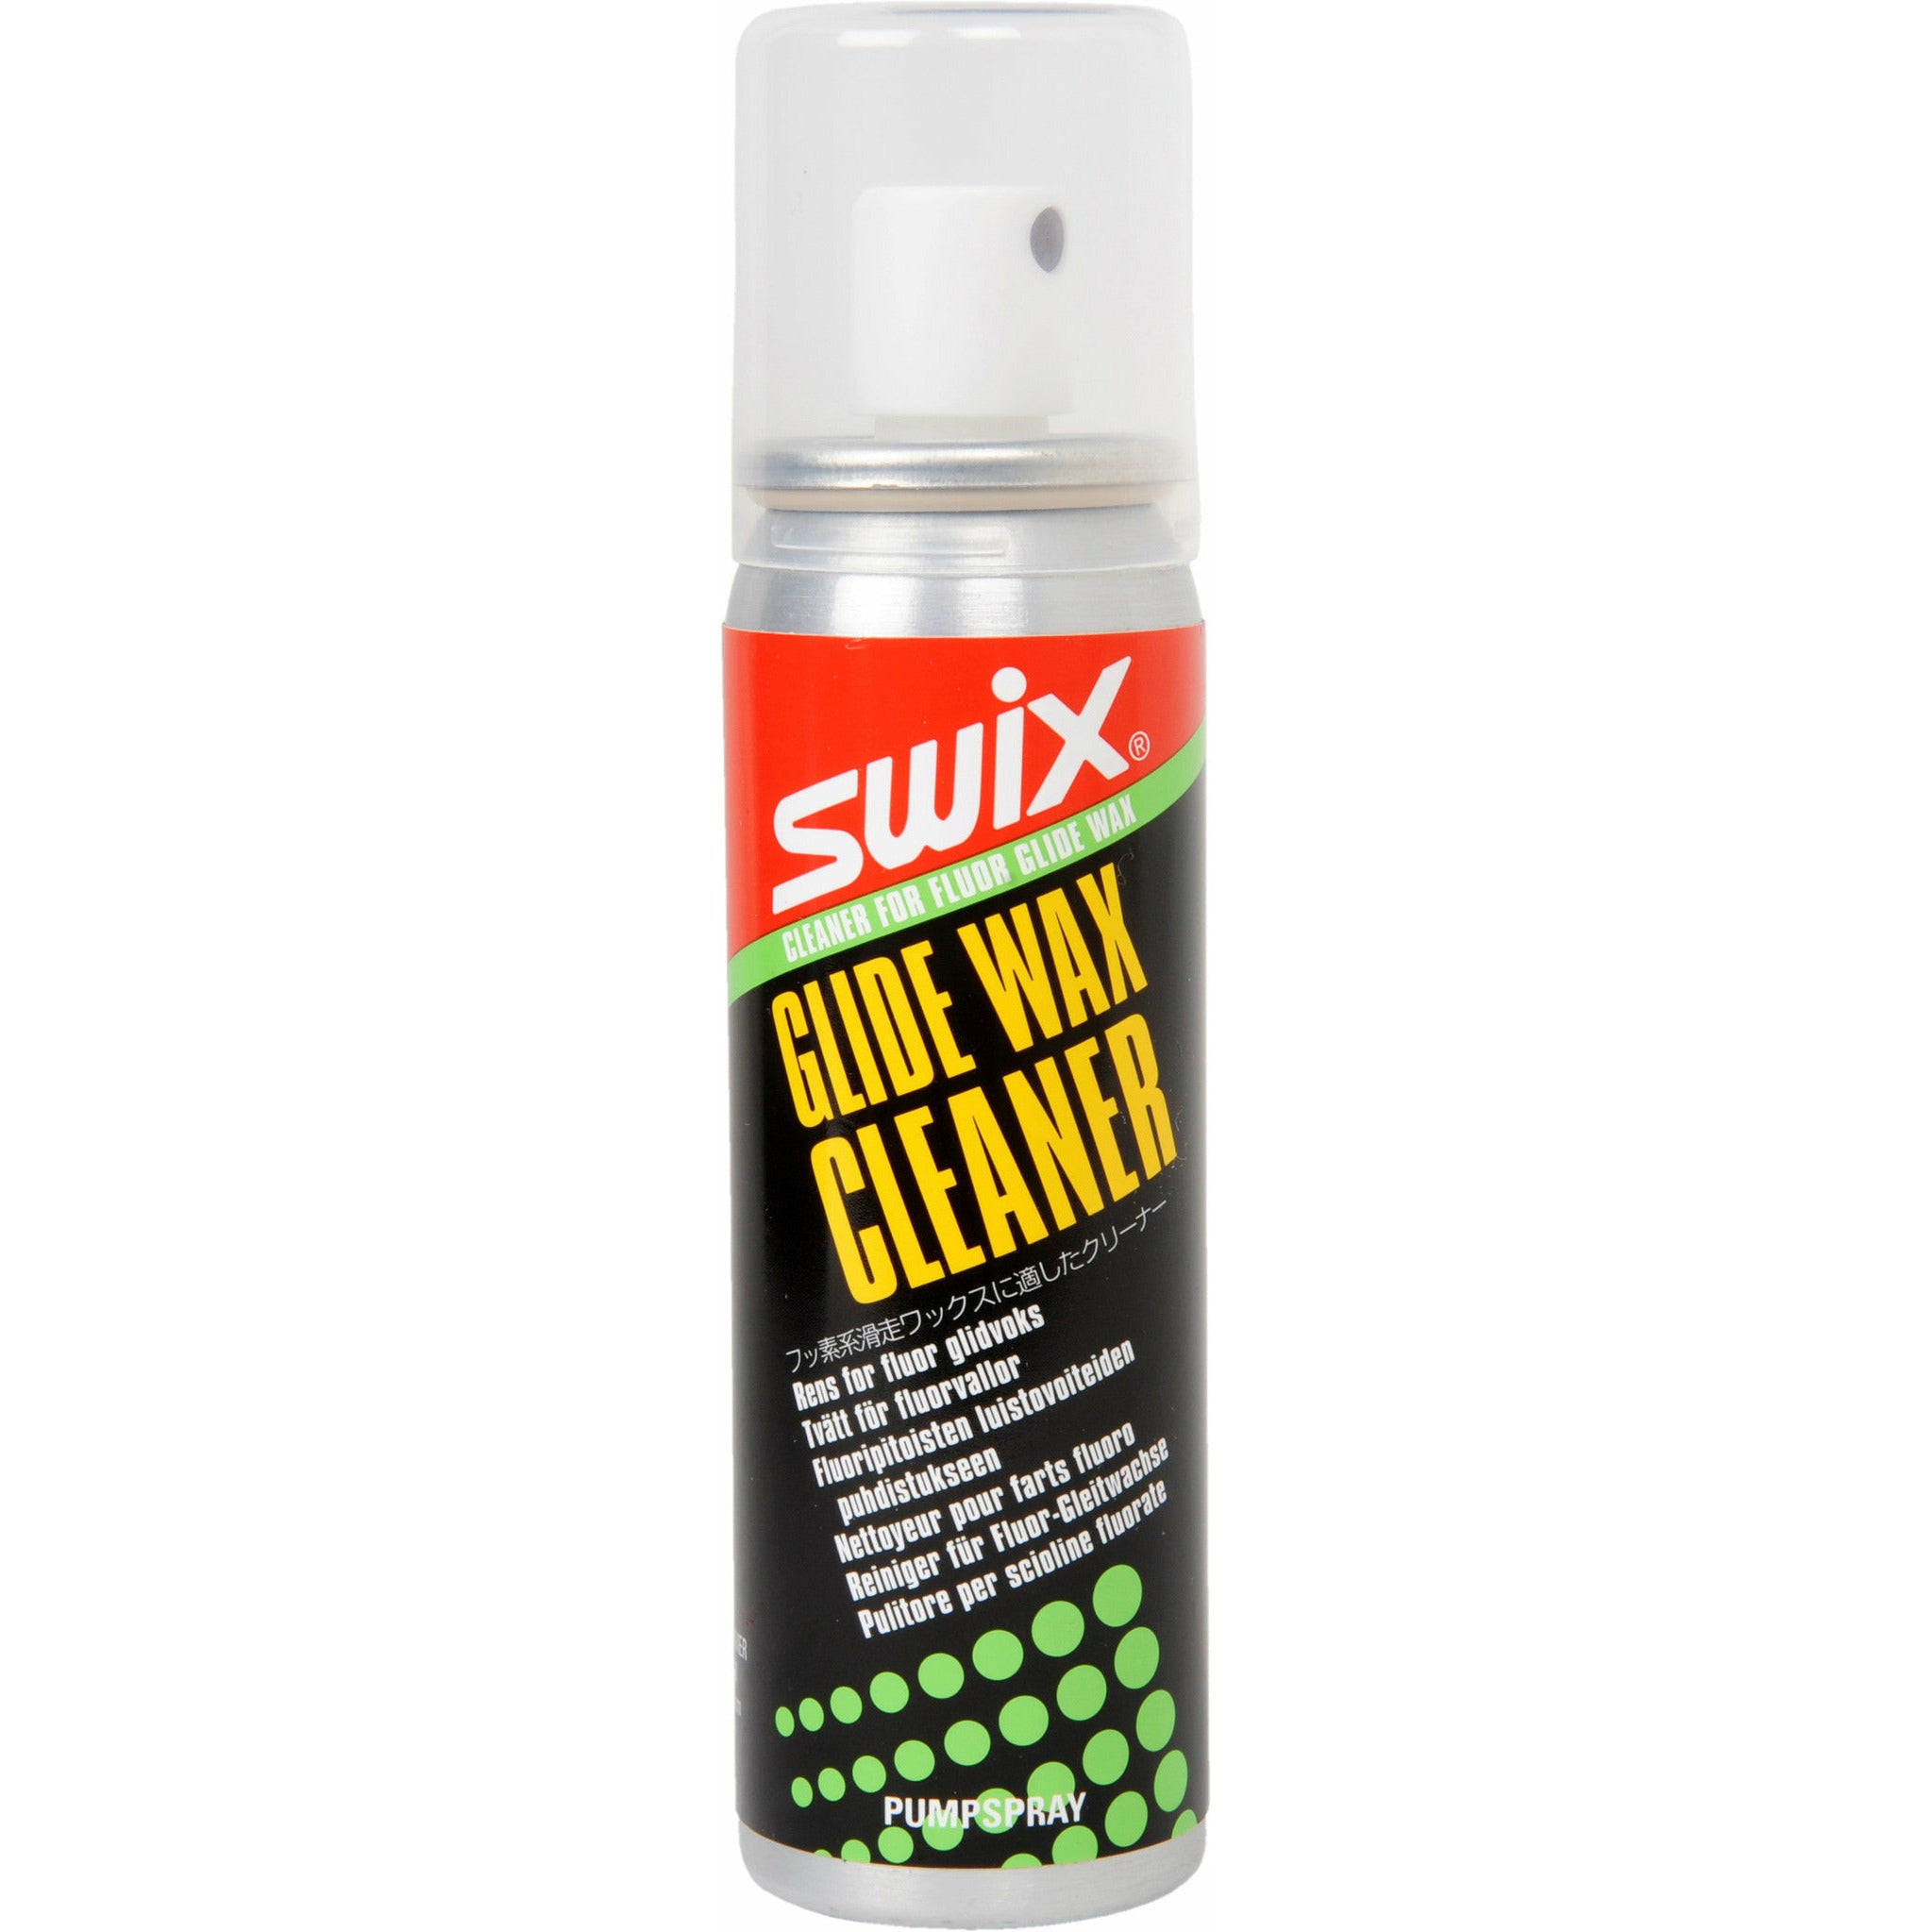 Swix Glide Wax Cleaner 70ml